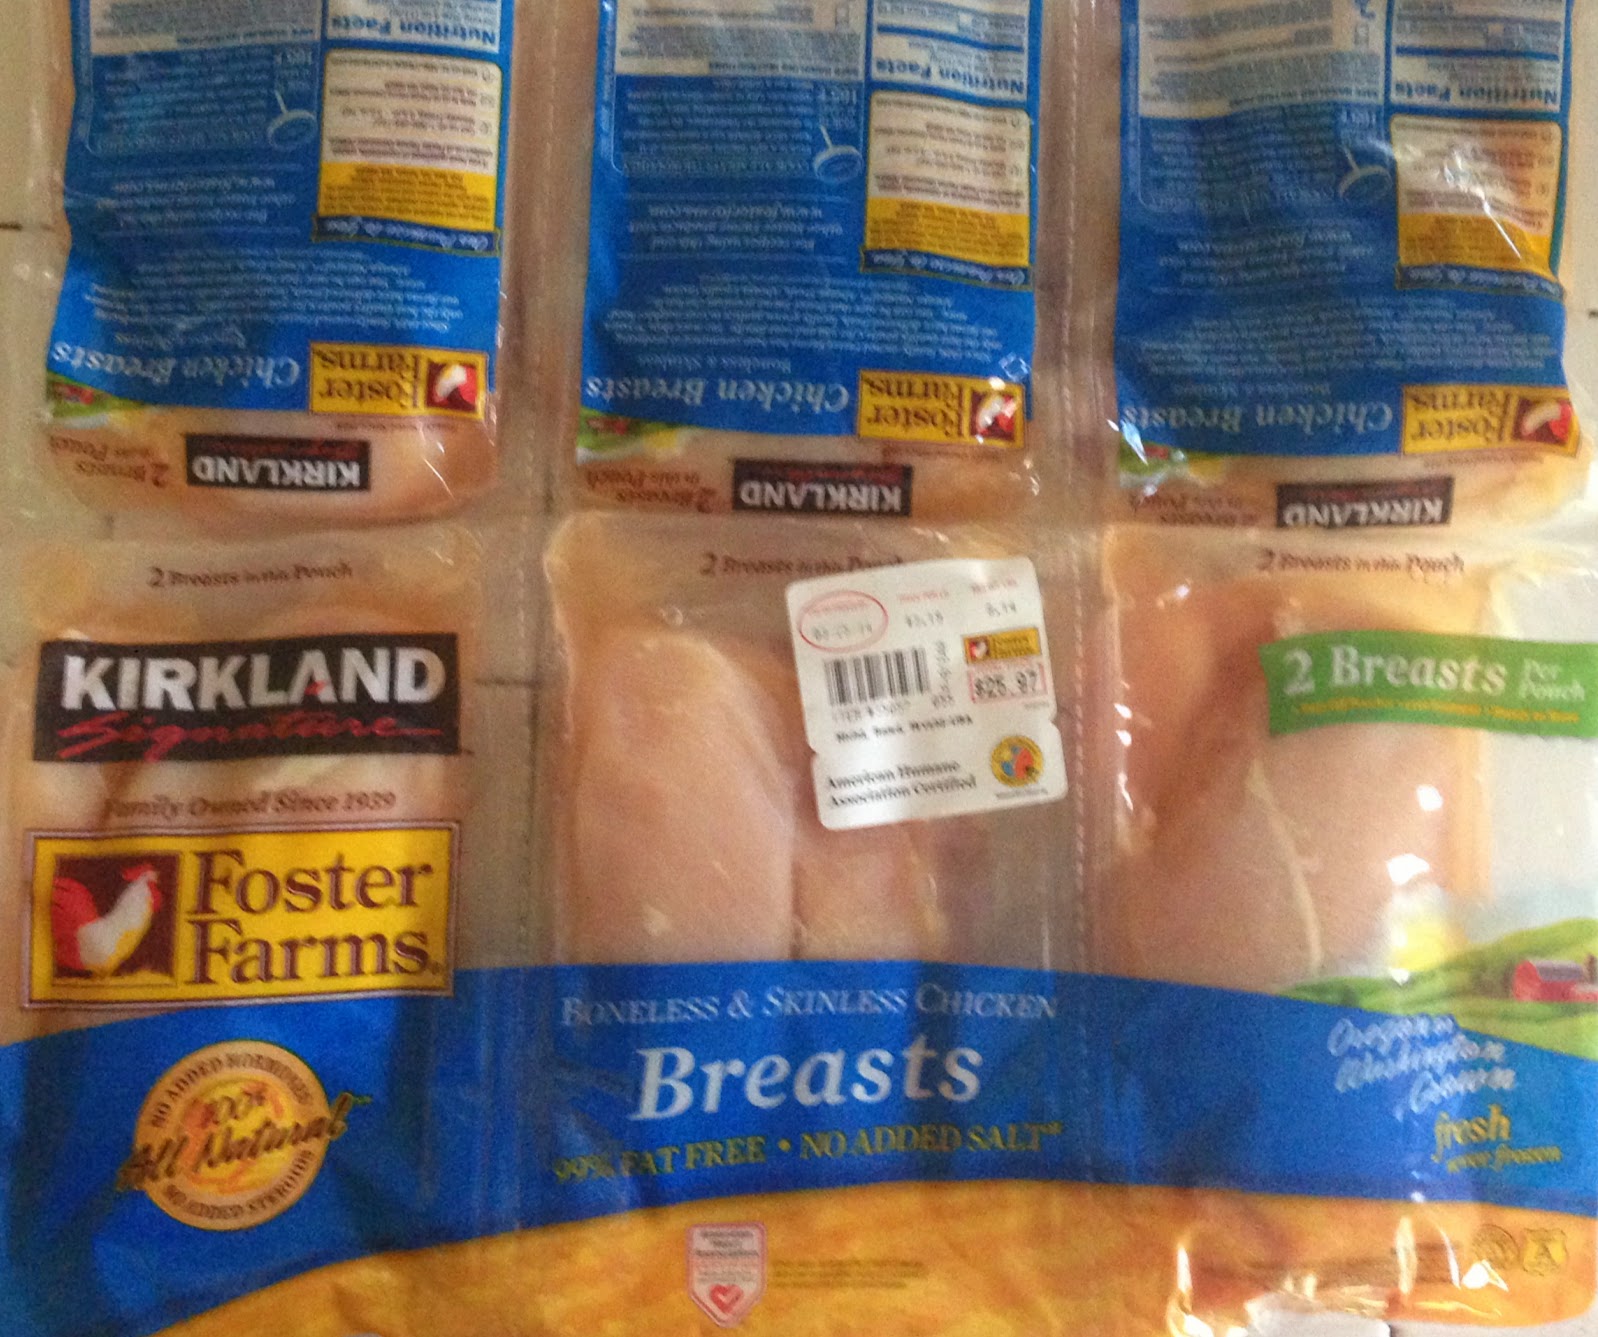 Chicken Breast